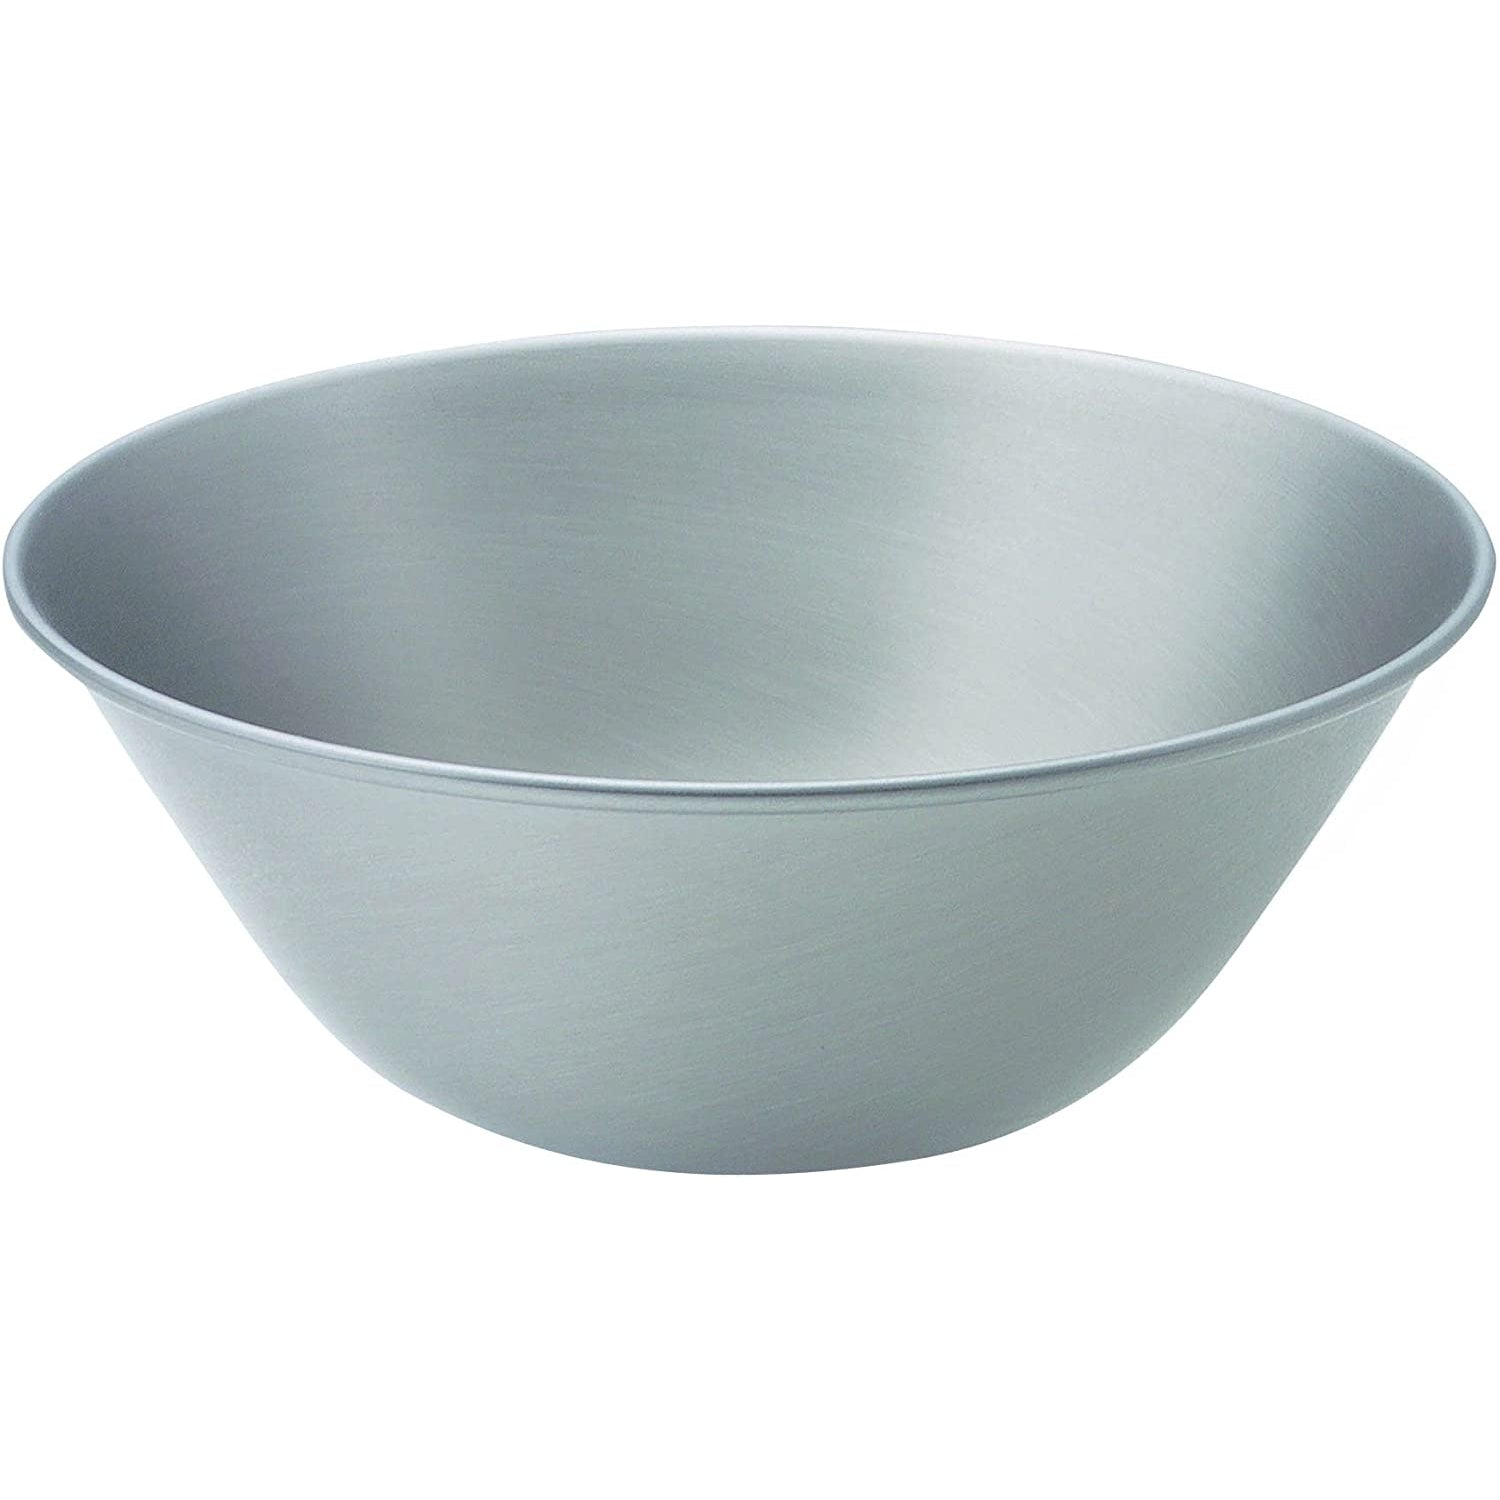 Sori Yanagi Stainless Steel Mixing Bowl